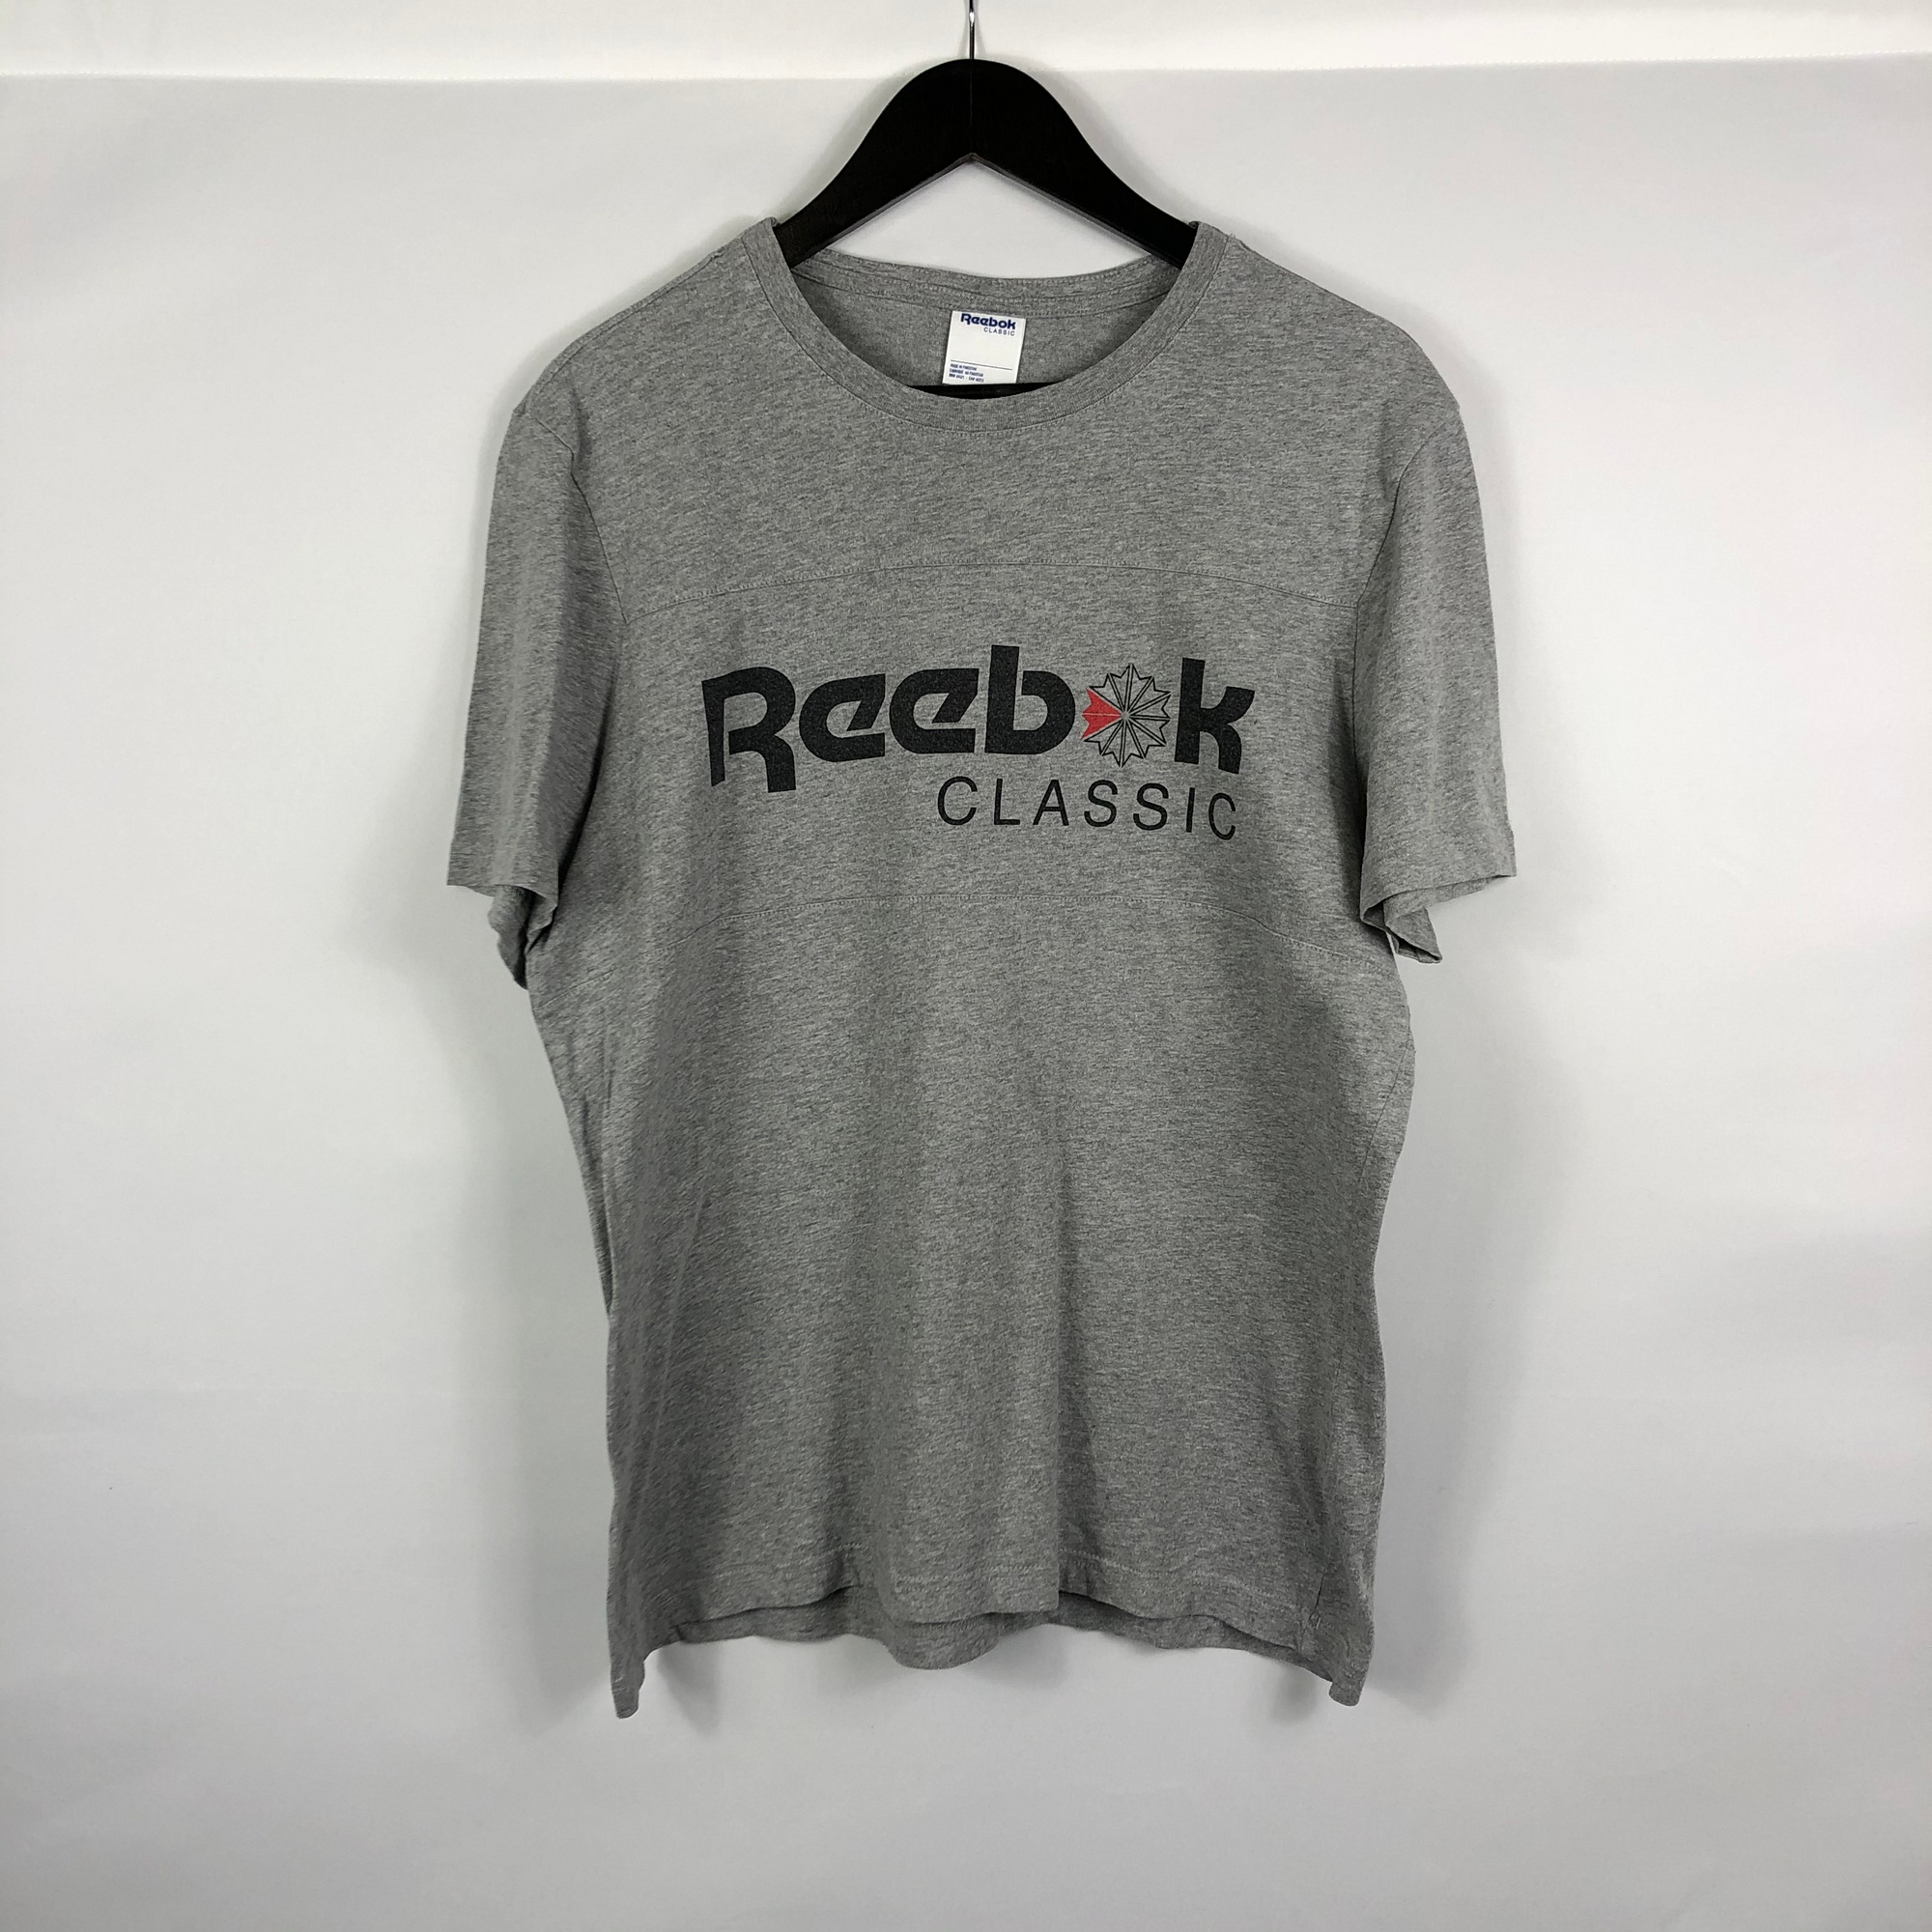 Vintage Reebok T-Shirt - Men's Medium/ Women's Large